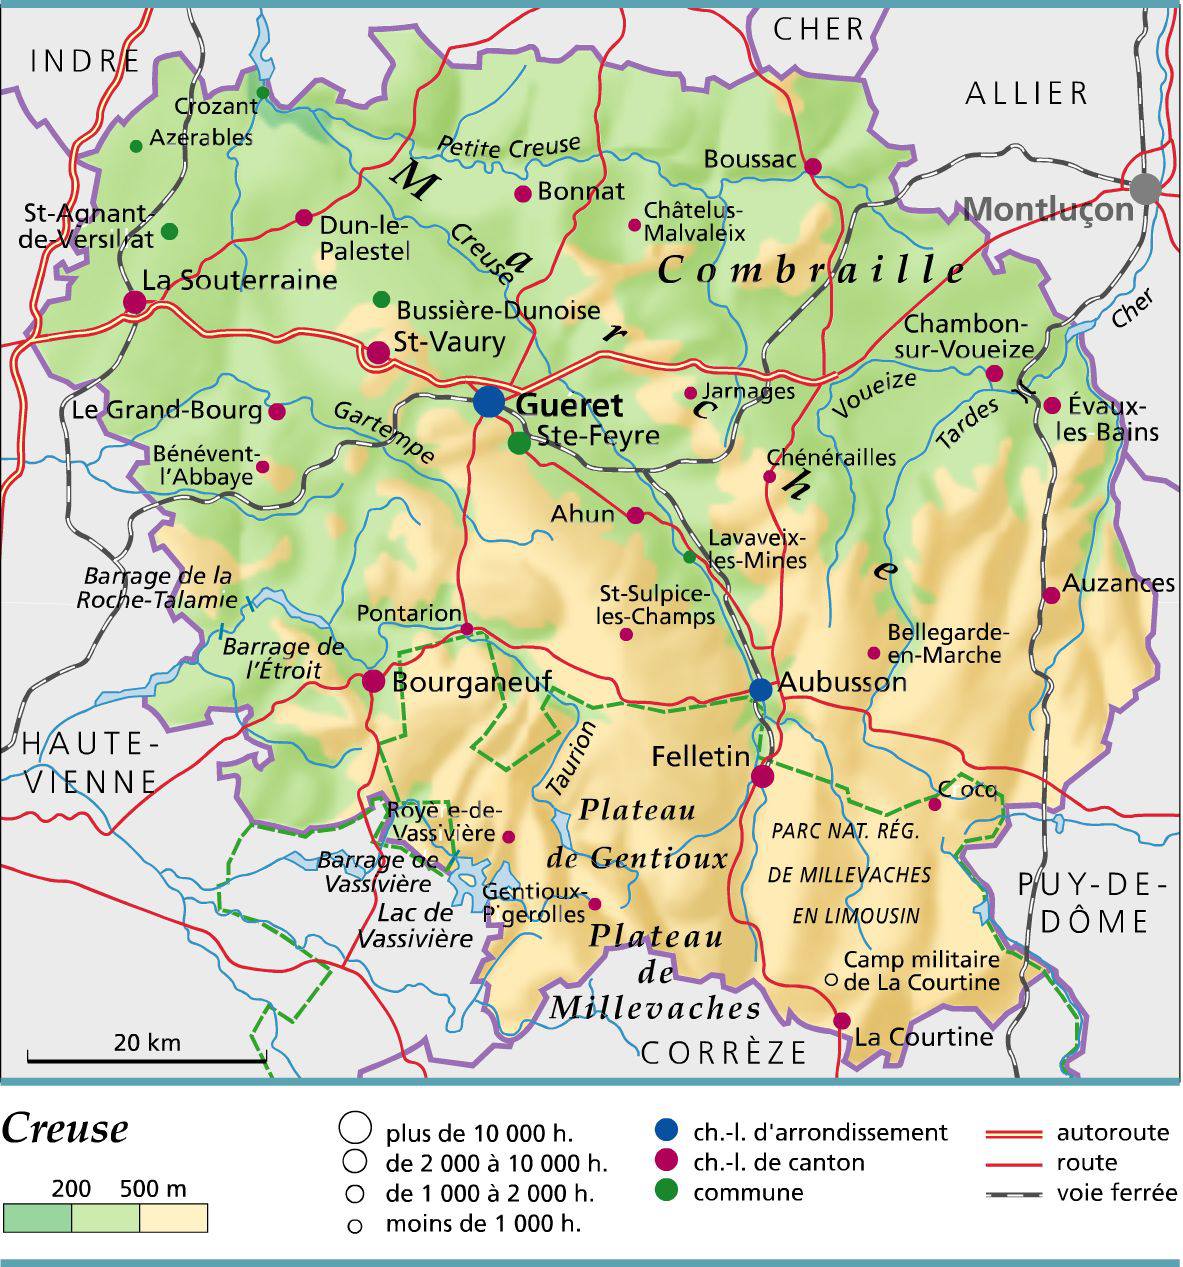 Carte de la Creuse - Creuse carte du département 23 - villes, tourisme...